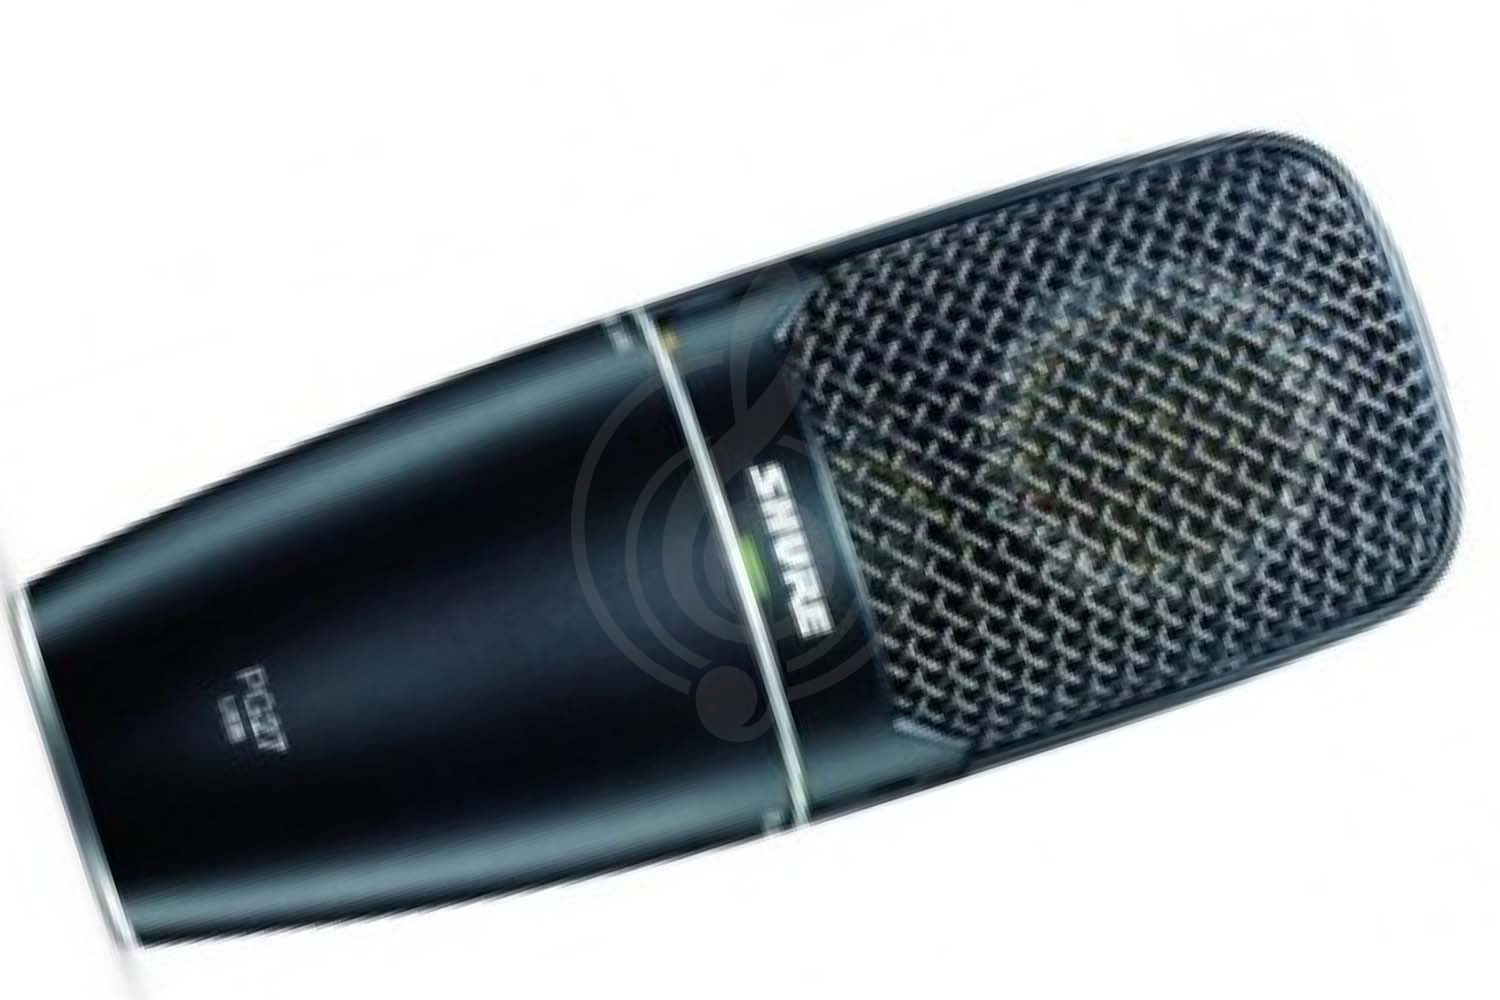 Конденсаторный студийный микрофон Конденсаторные студийные микрофоны Shure SHURE PG27USB - конденсаторный студийный микрофон PG27USB - фото 1